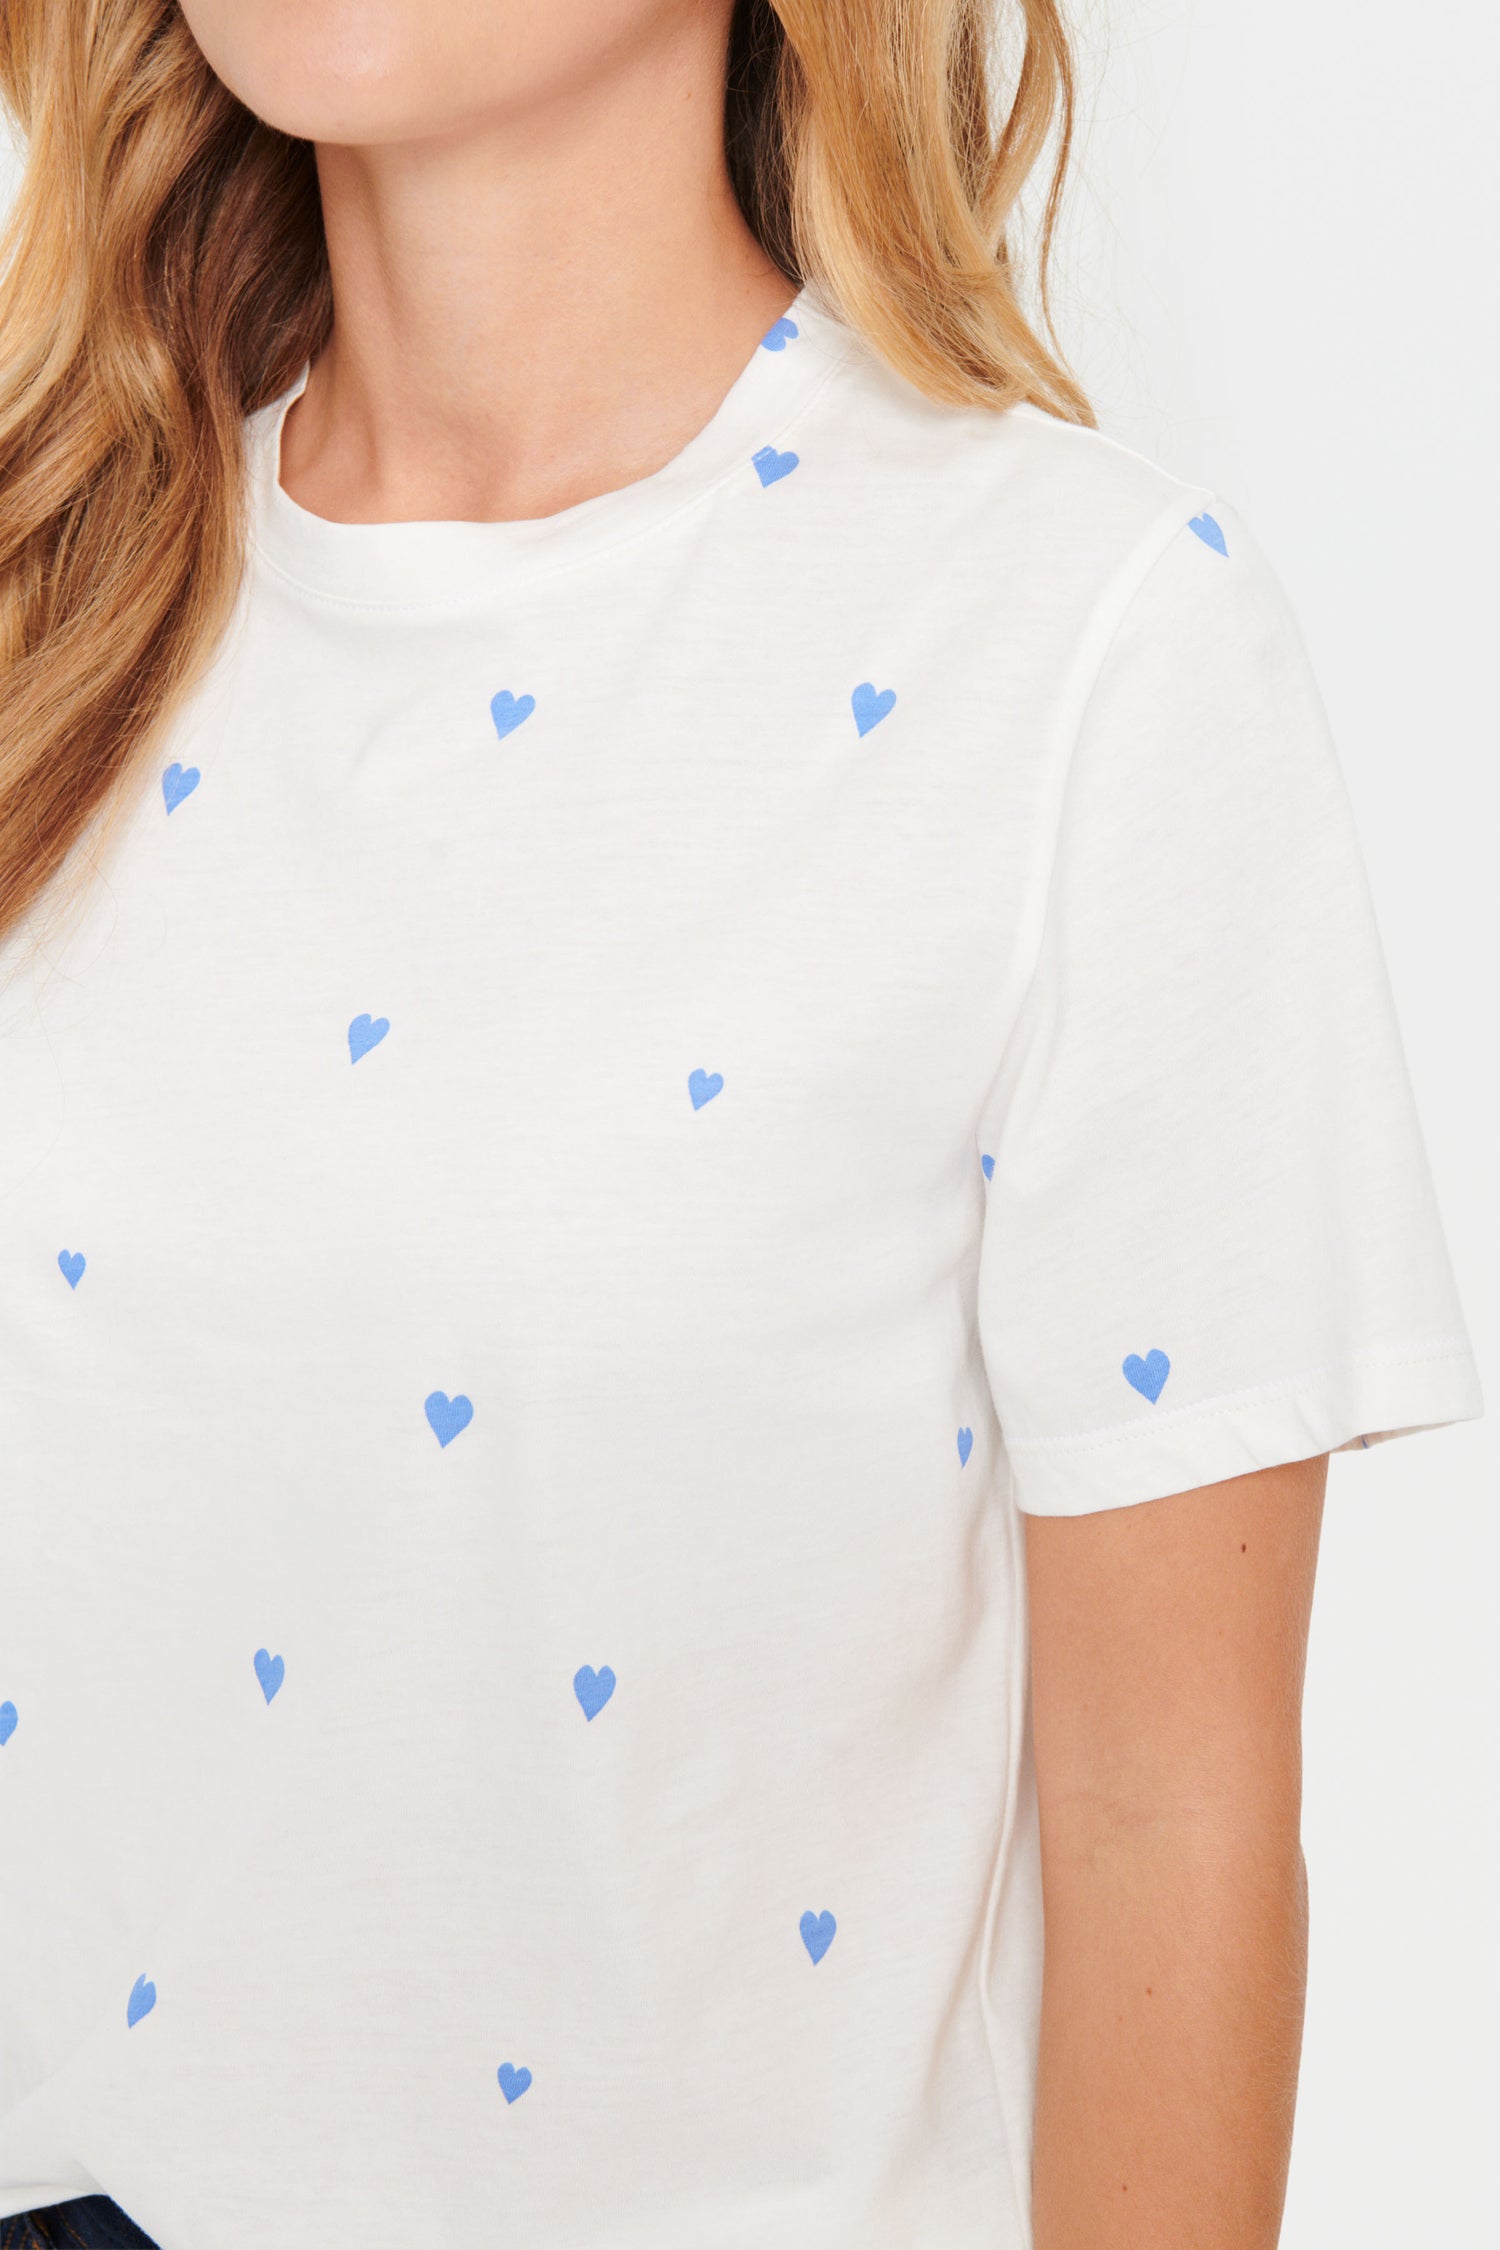 Saint Tropez Dagni T-Shirt Ultramarine Hearts